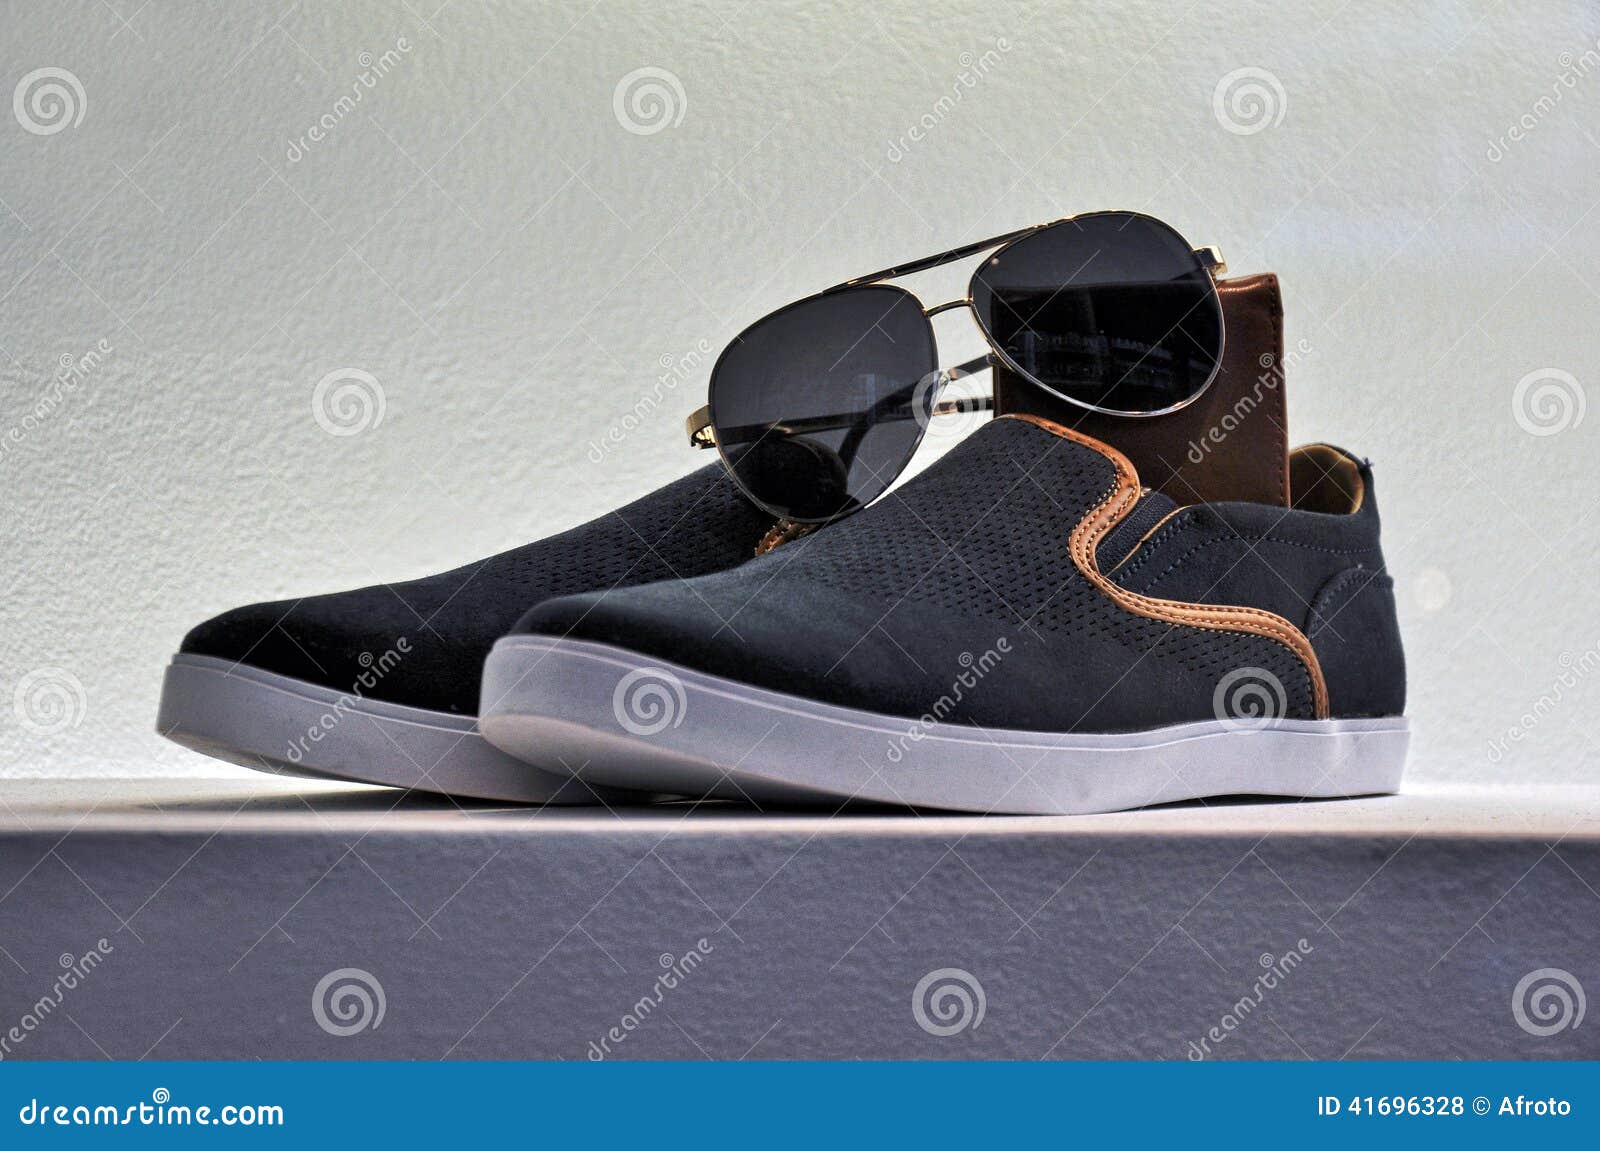 Elegant sport shoes stock photo. Image of style, stylish - 41696328